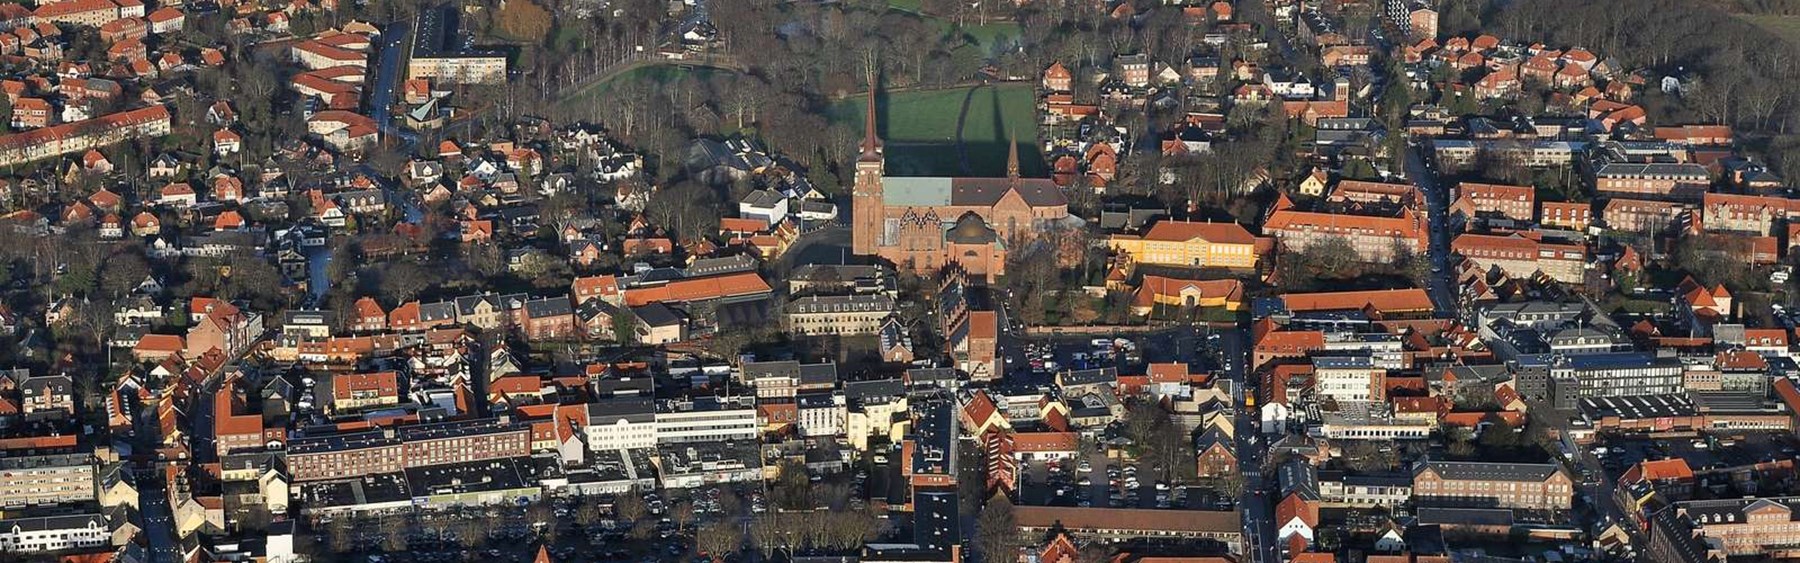 Overbliksbillede over Roskilde Bymidte